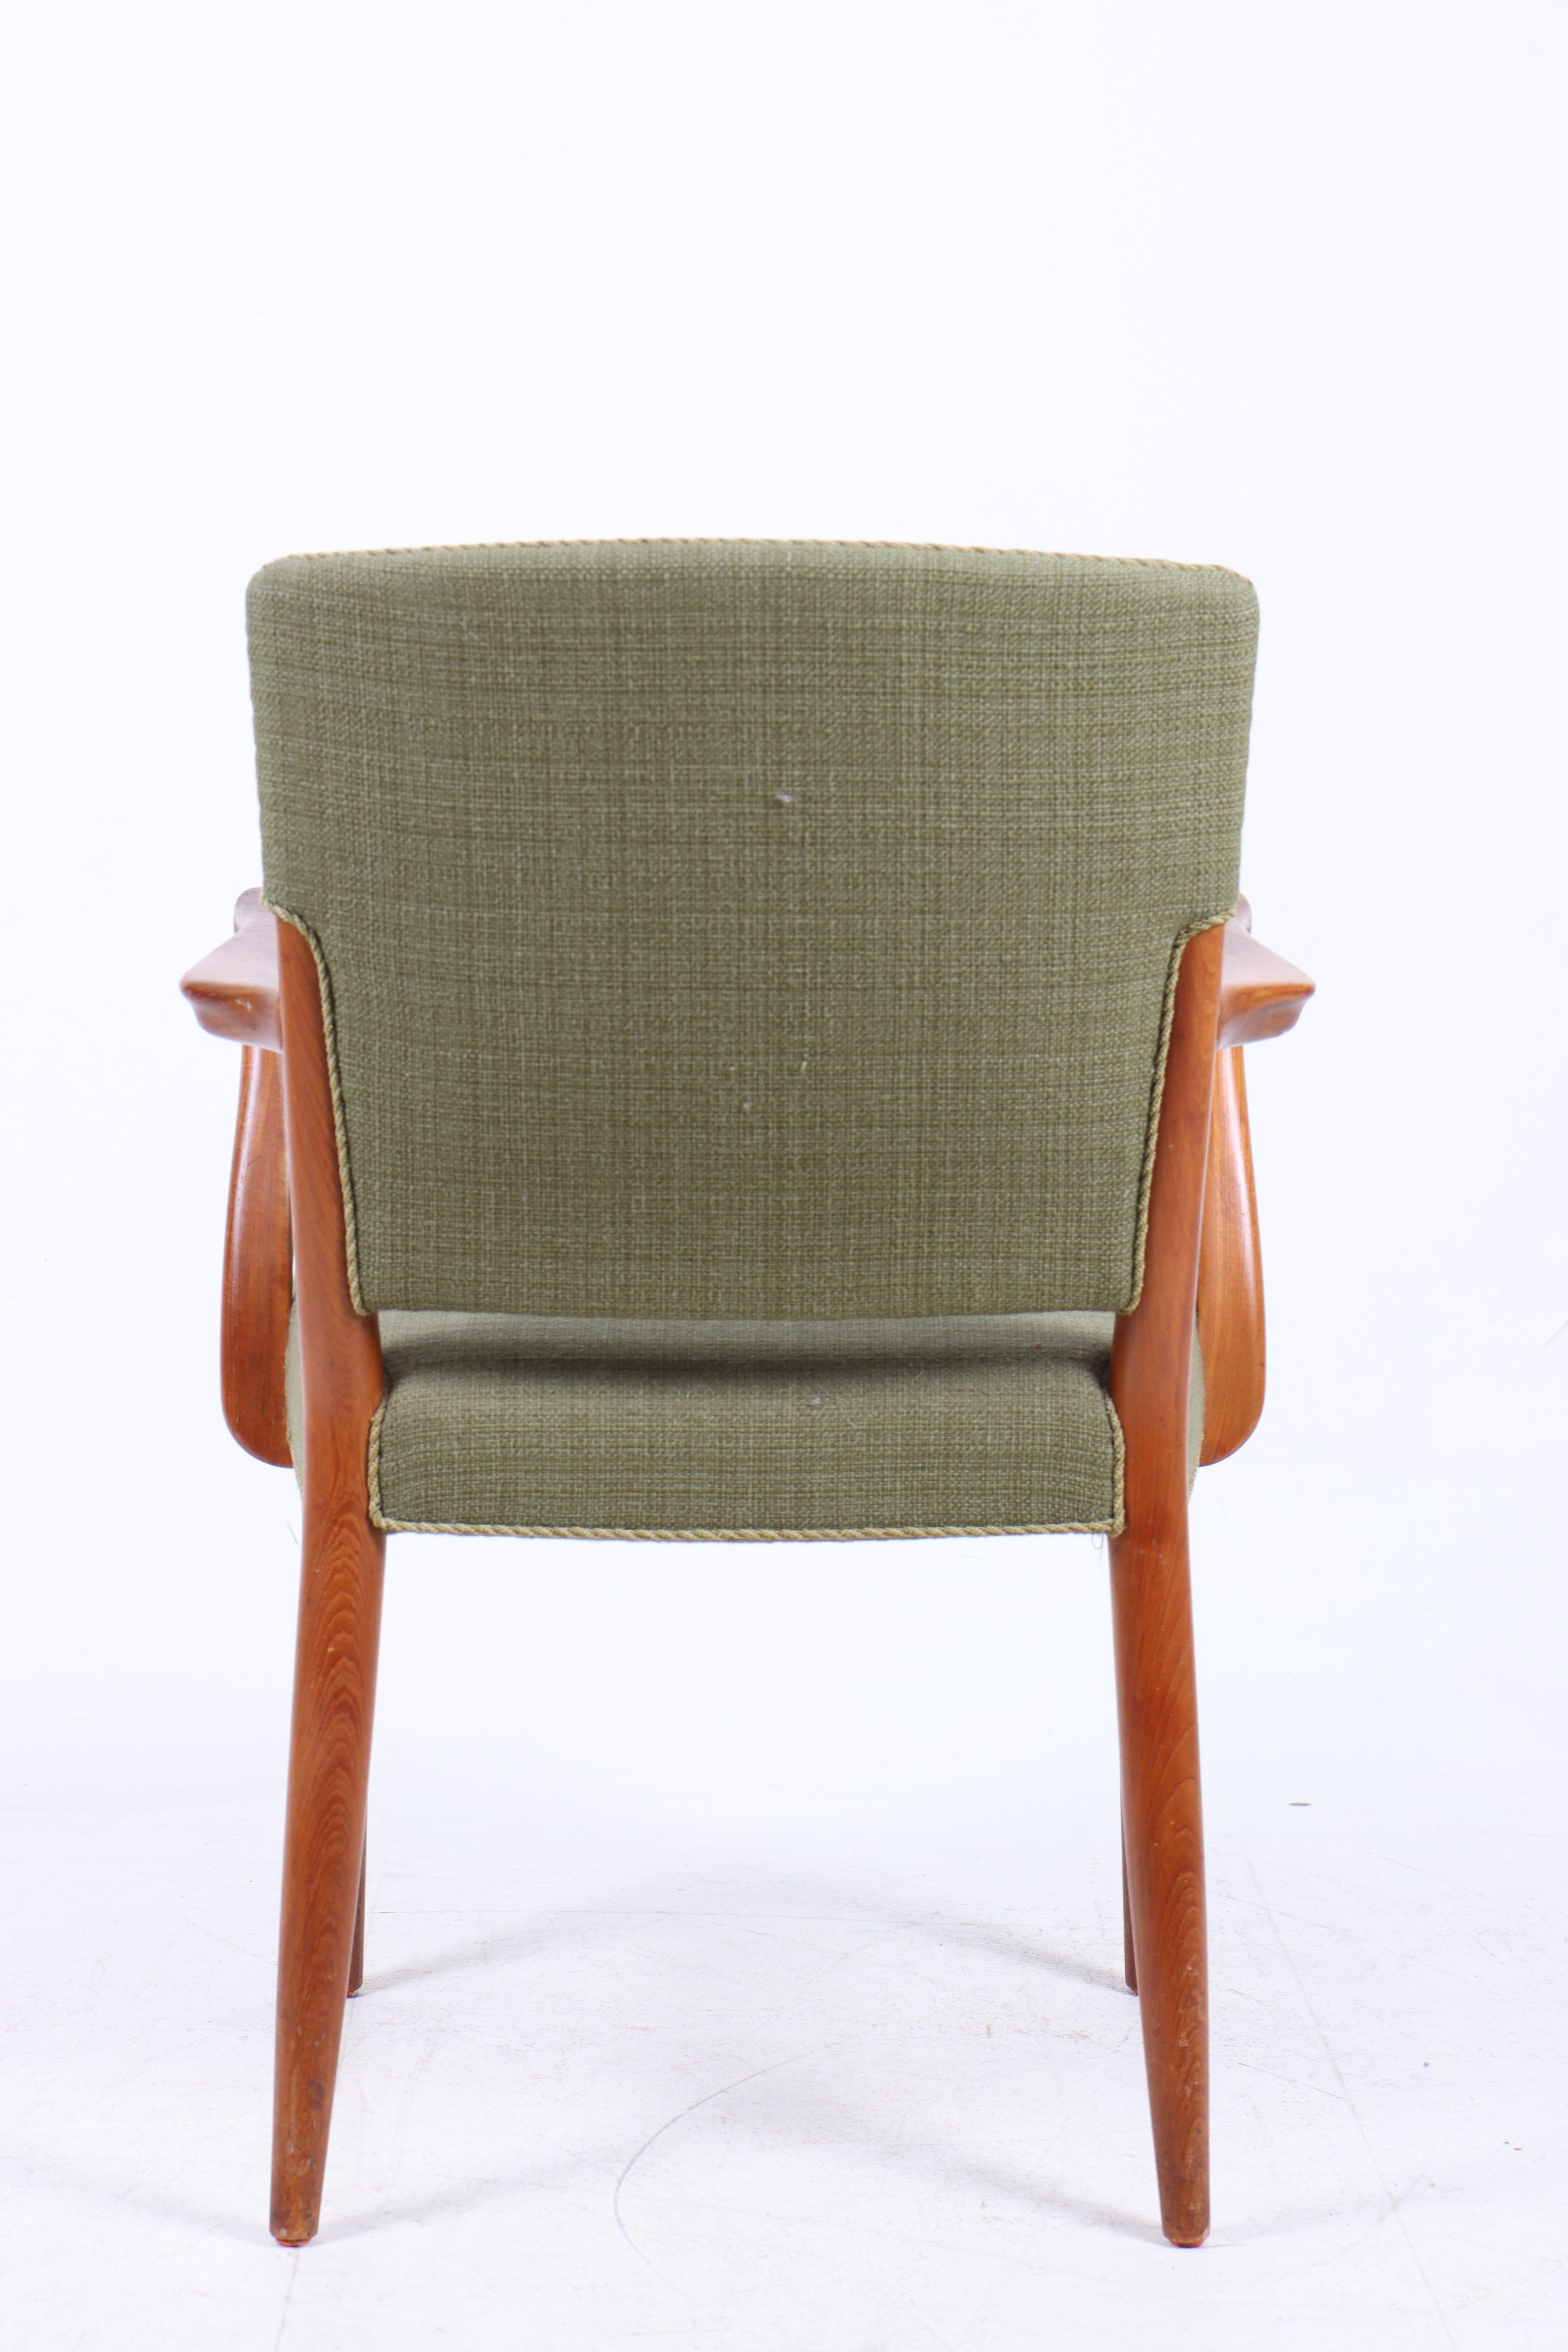 Beistellstuhl aus Teakholz und Stoff, entworfen von Peter Hvidt & Orla Mølgaard für den Tischler Gustav Bertelsen. Toller Originalzustand.